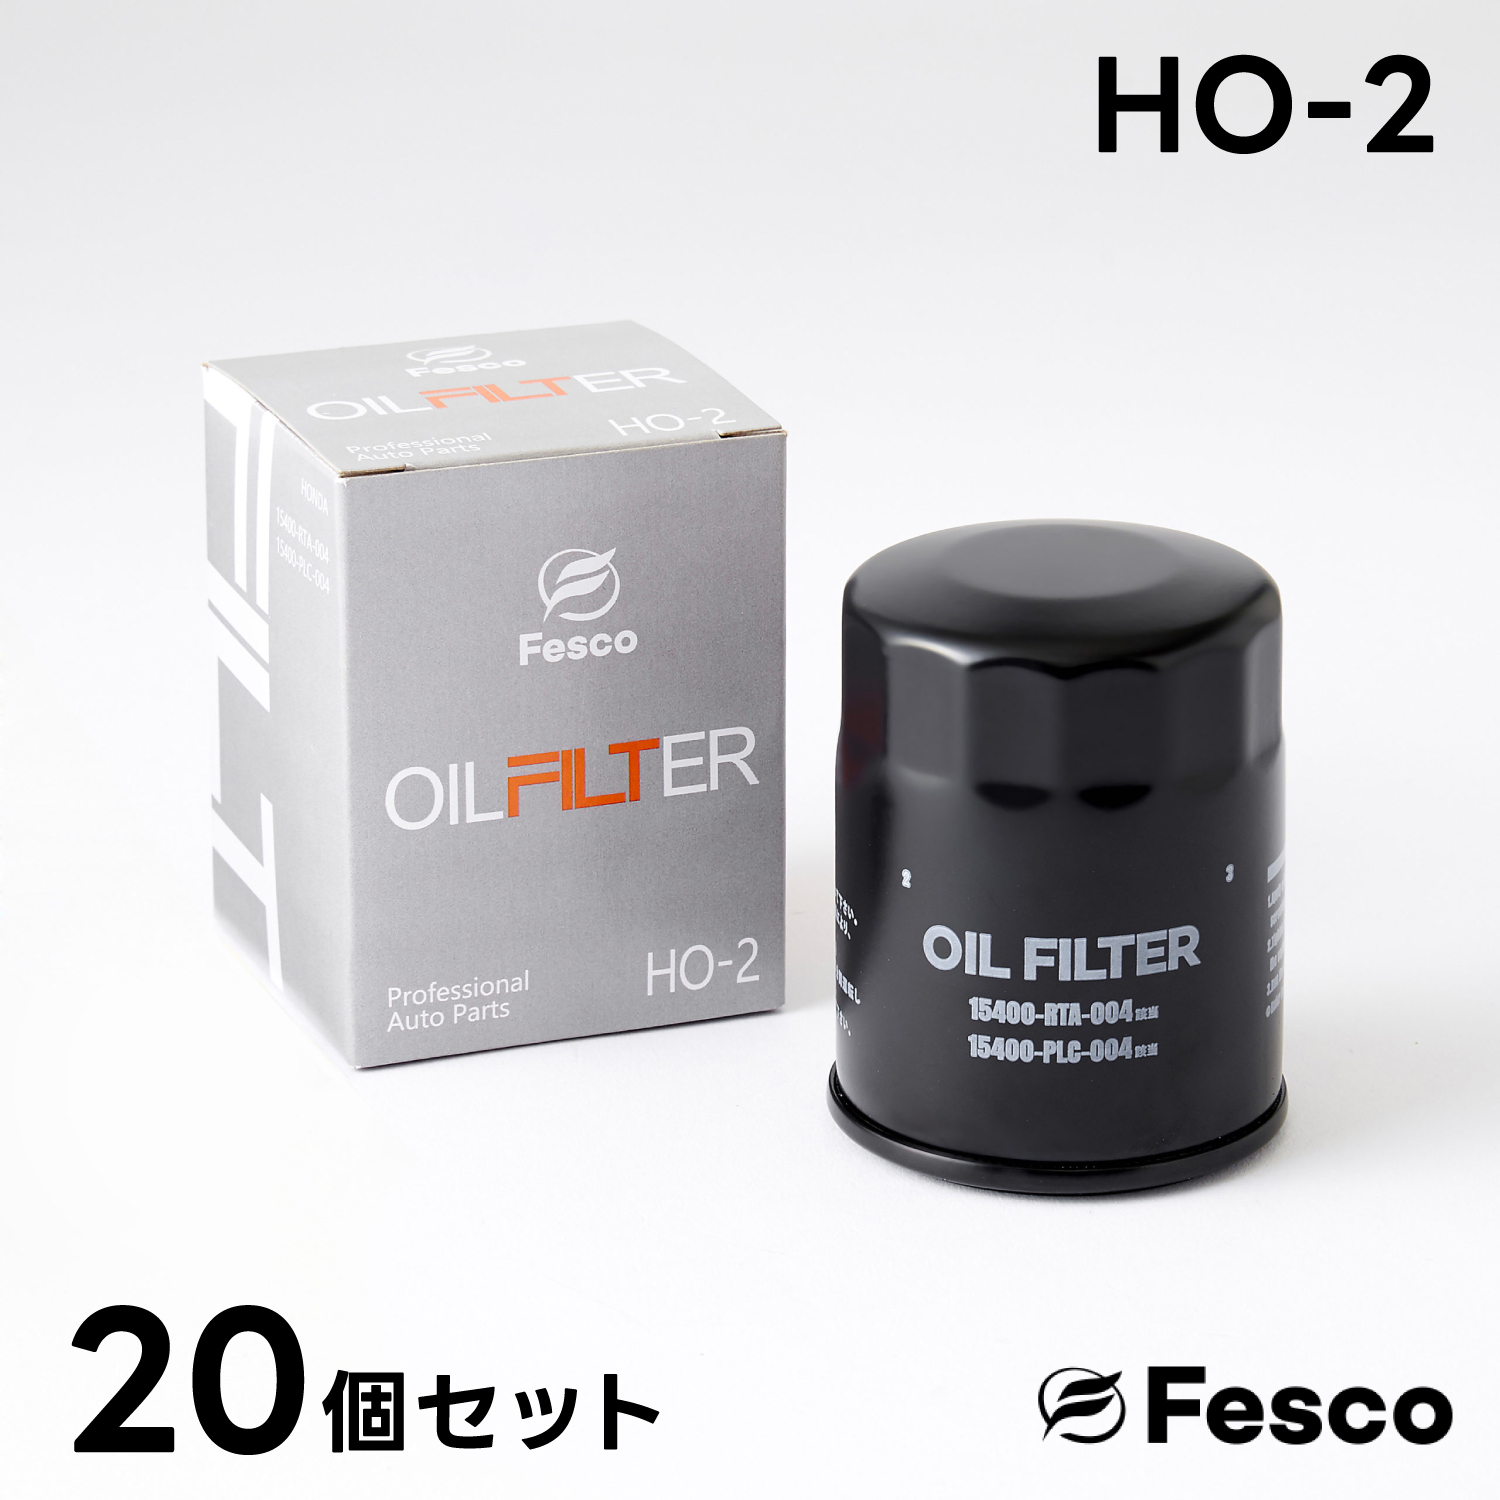 (20個セット)HO-2 オイルフィルター ホンダ オイルエレメント FESCO 15400-RTA-003 15400-RTA-004